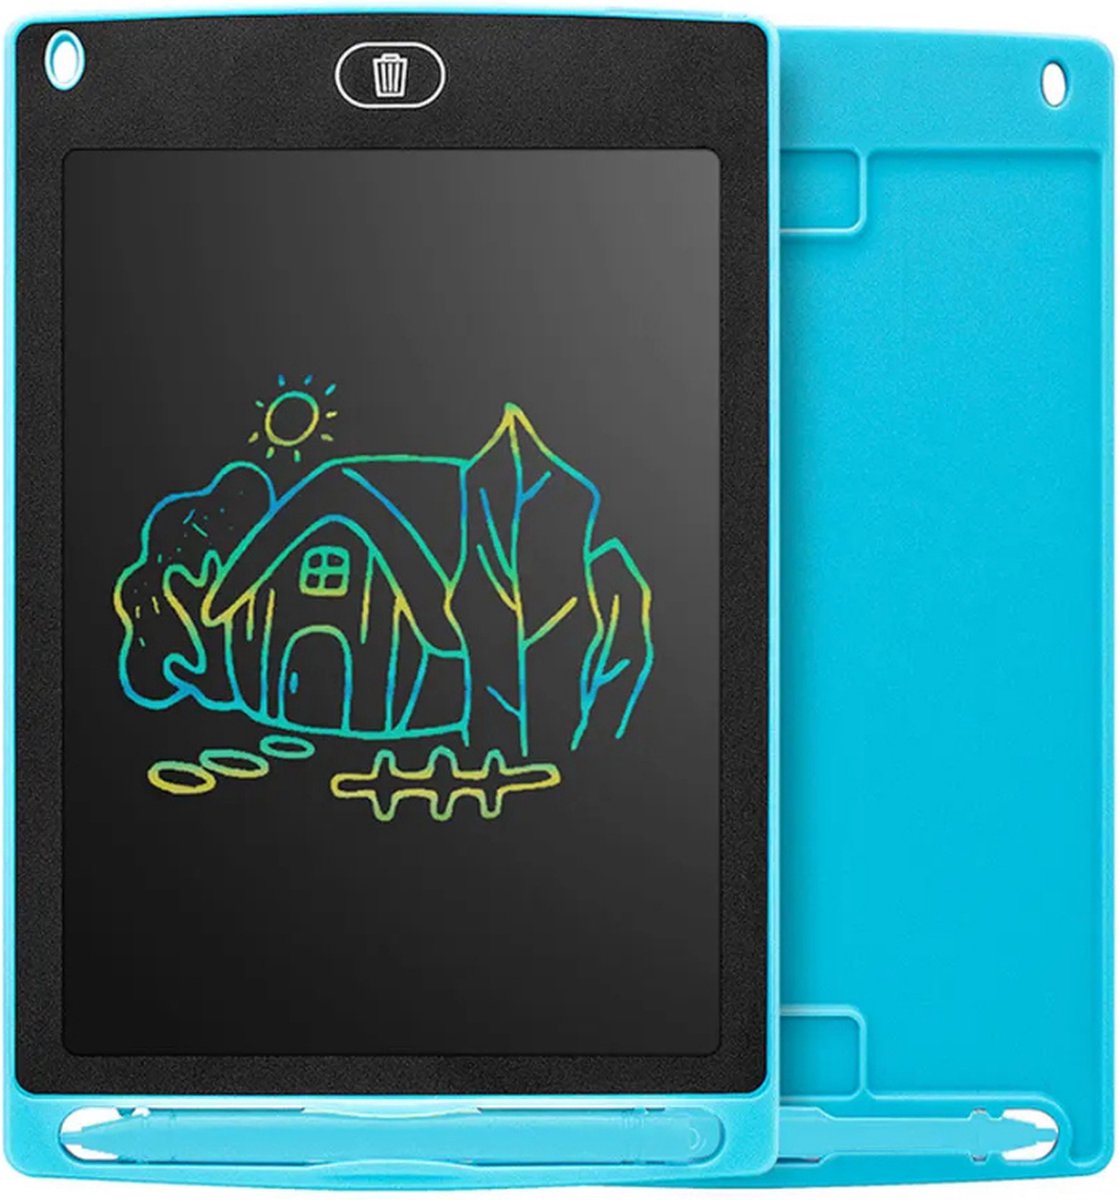 P&P Goods Tekentablet - Tekentablet Voor Kinderen - Tekenbord - Draagbaar Formaat - Klein Formaat - Teken Tablet - 6.5 Inch -Blauw